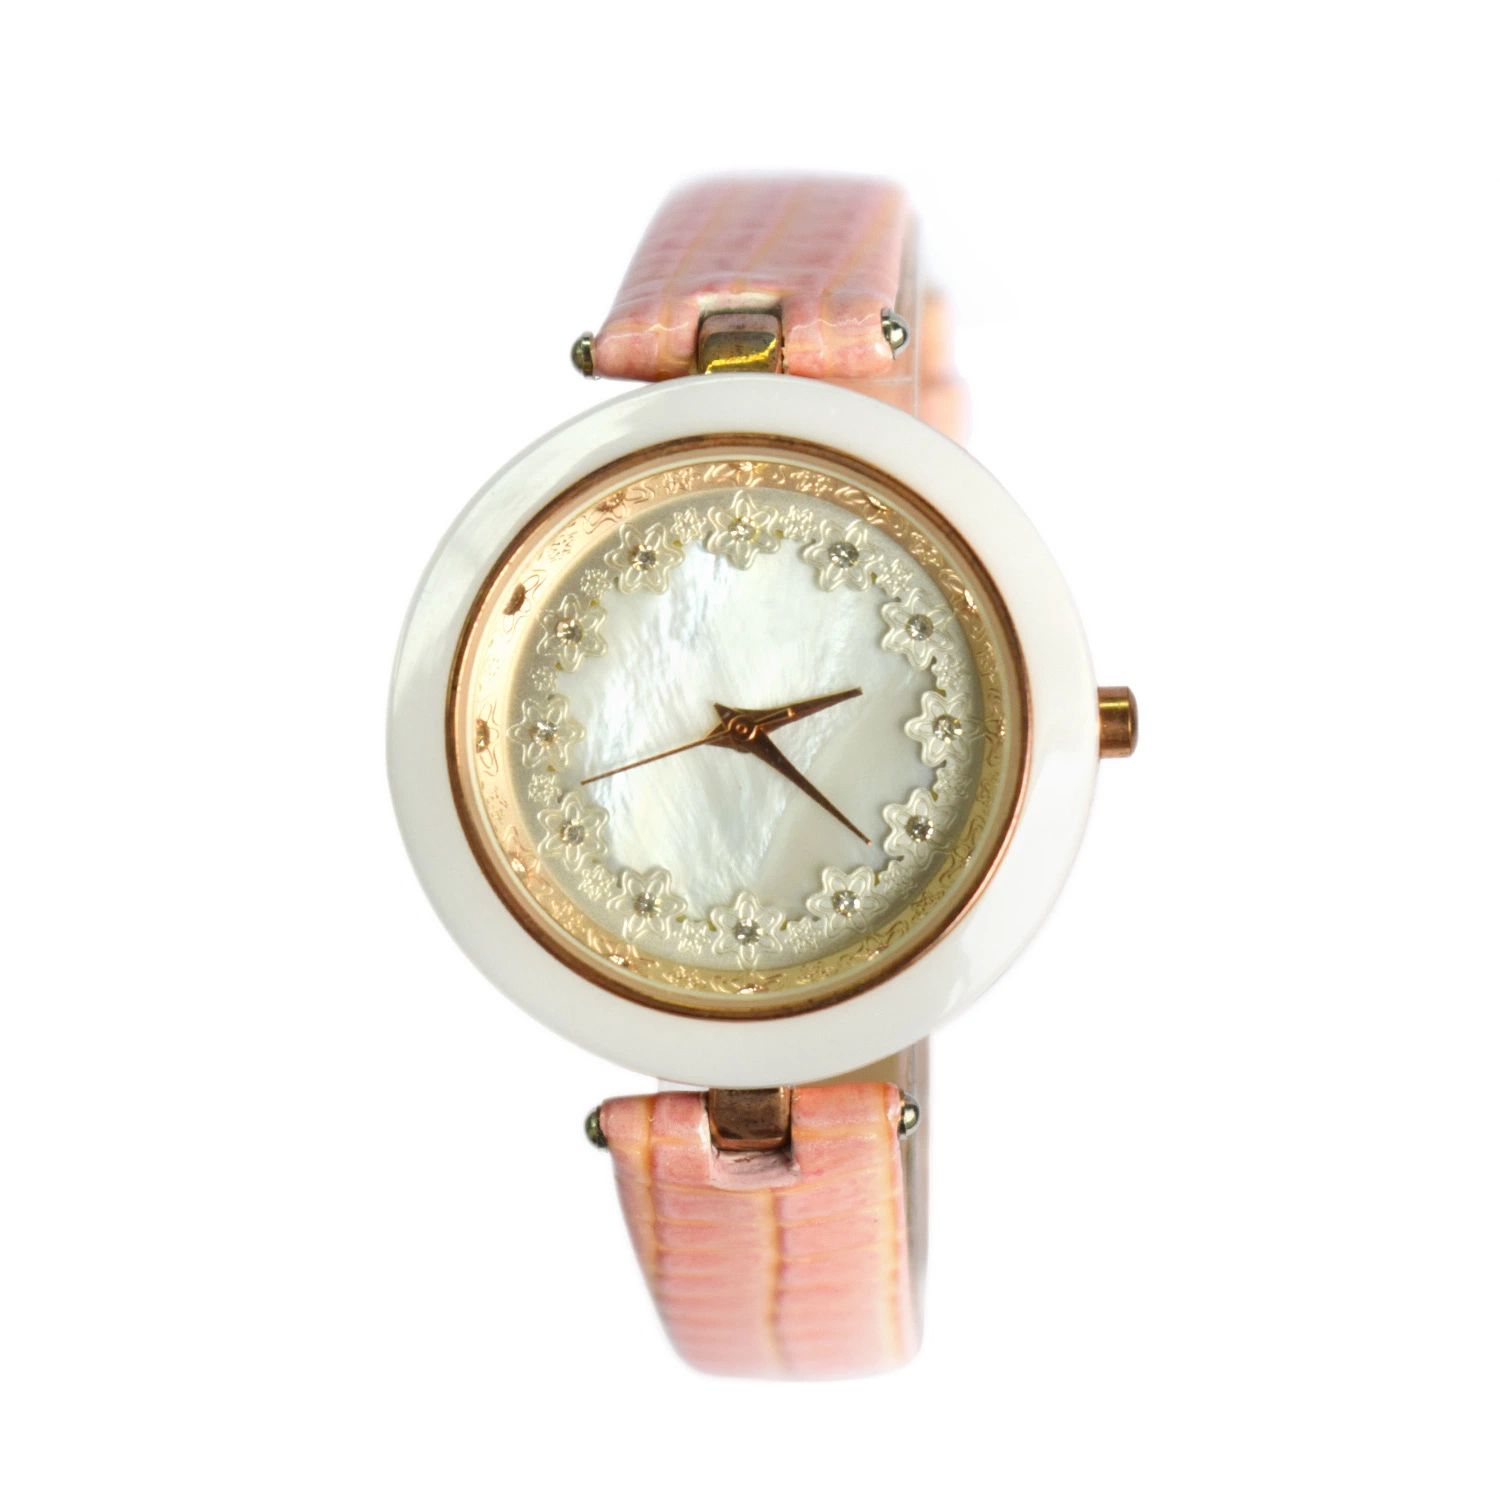 Großhandel Luxus Curren Schweizer Schmuck Geschenk Handgelenk Armband Uhr (cm19134)